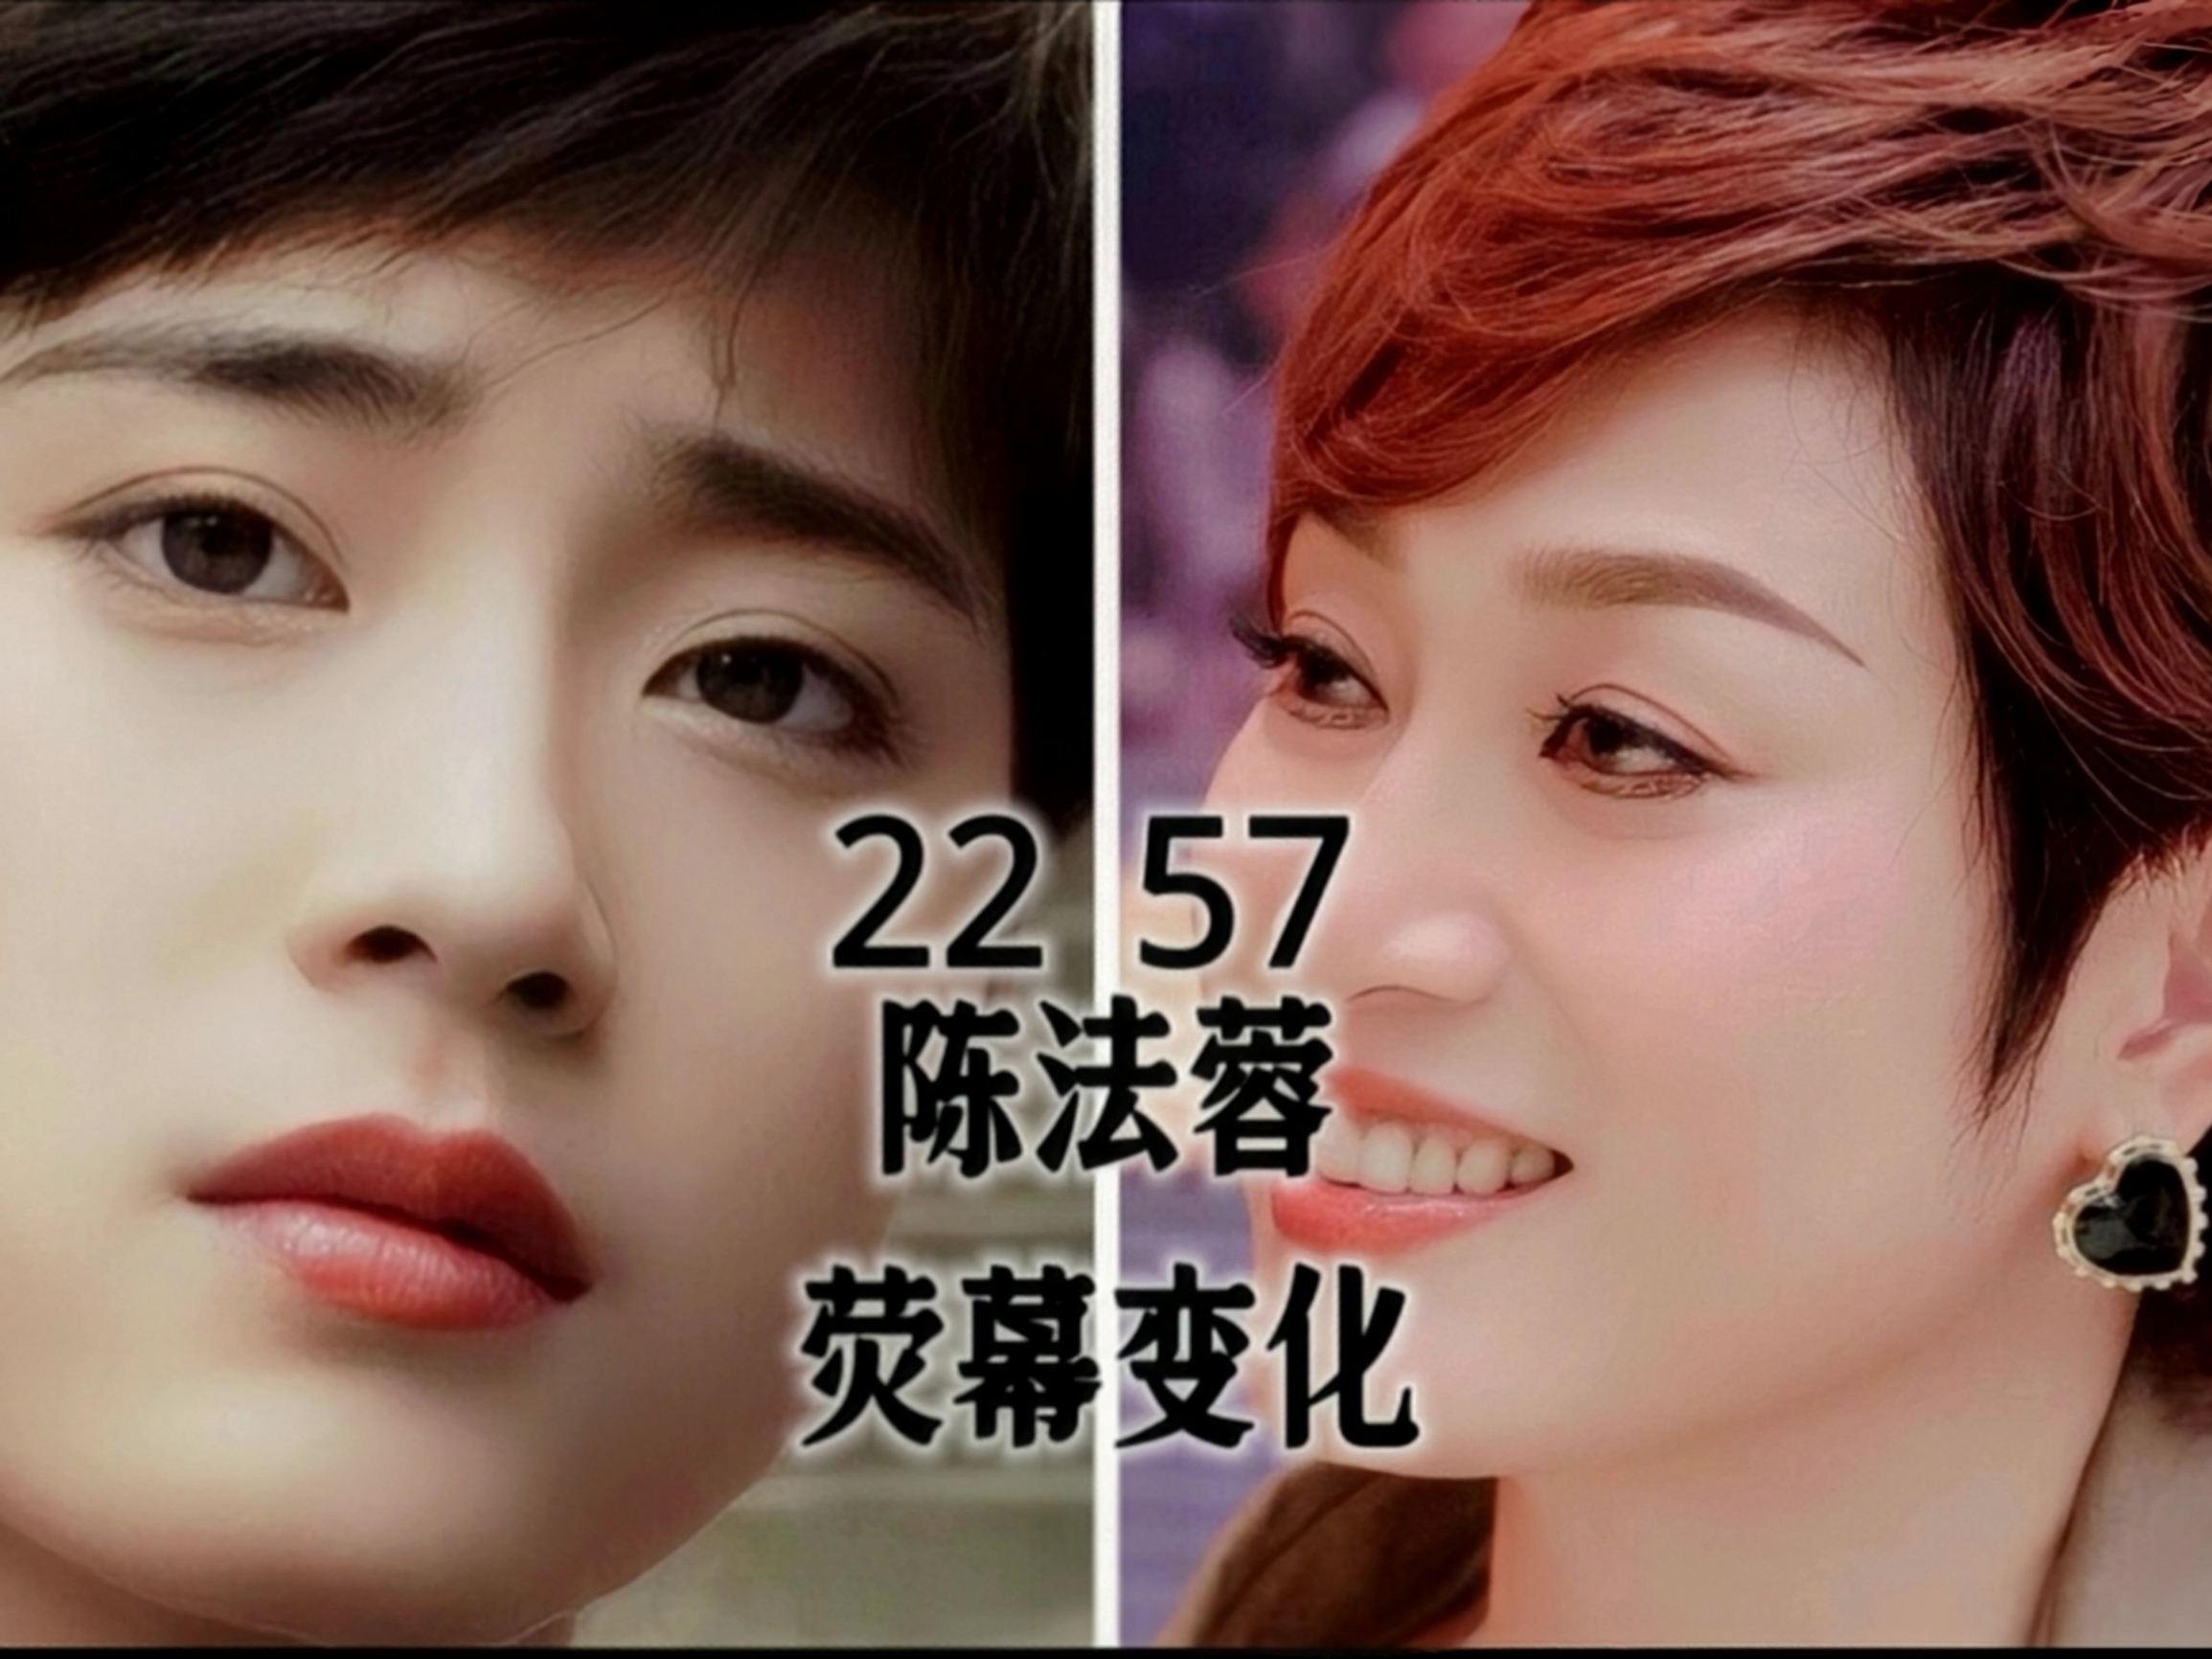 短发女神陈法蓉22岁到57岁荧幕颜值变化